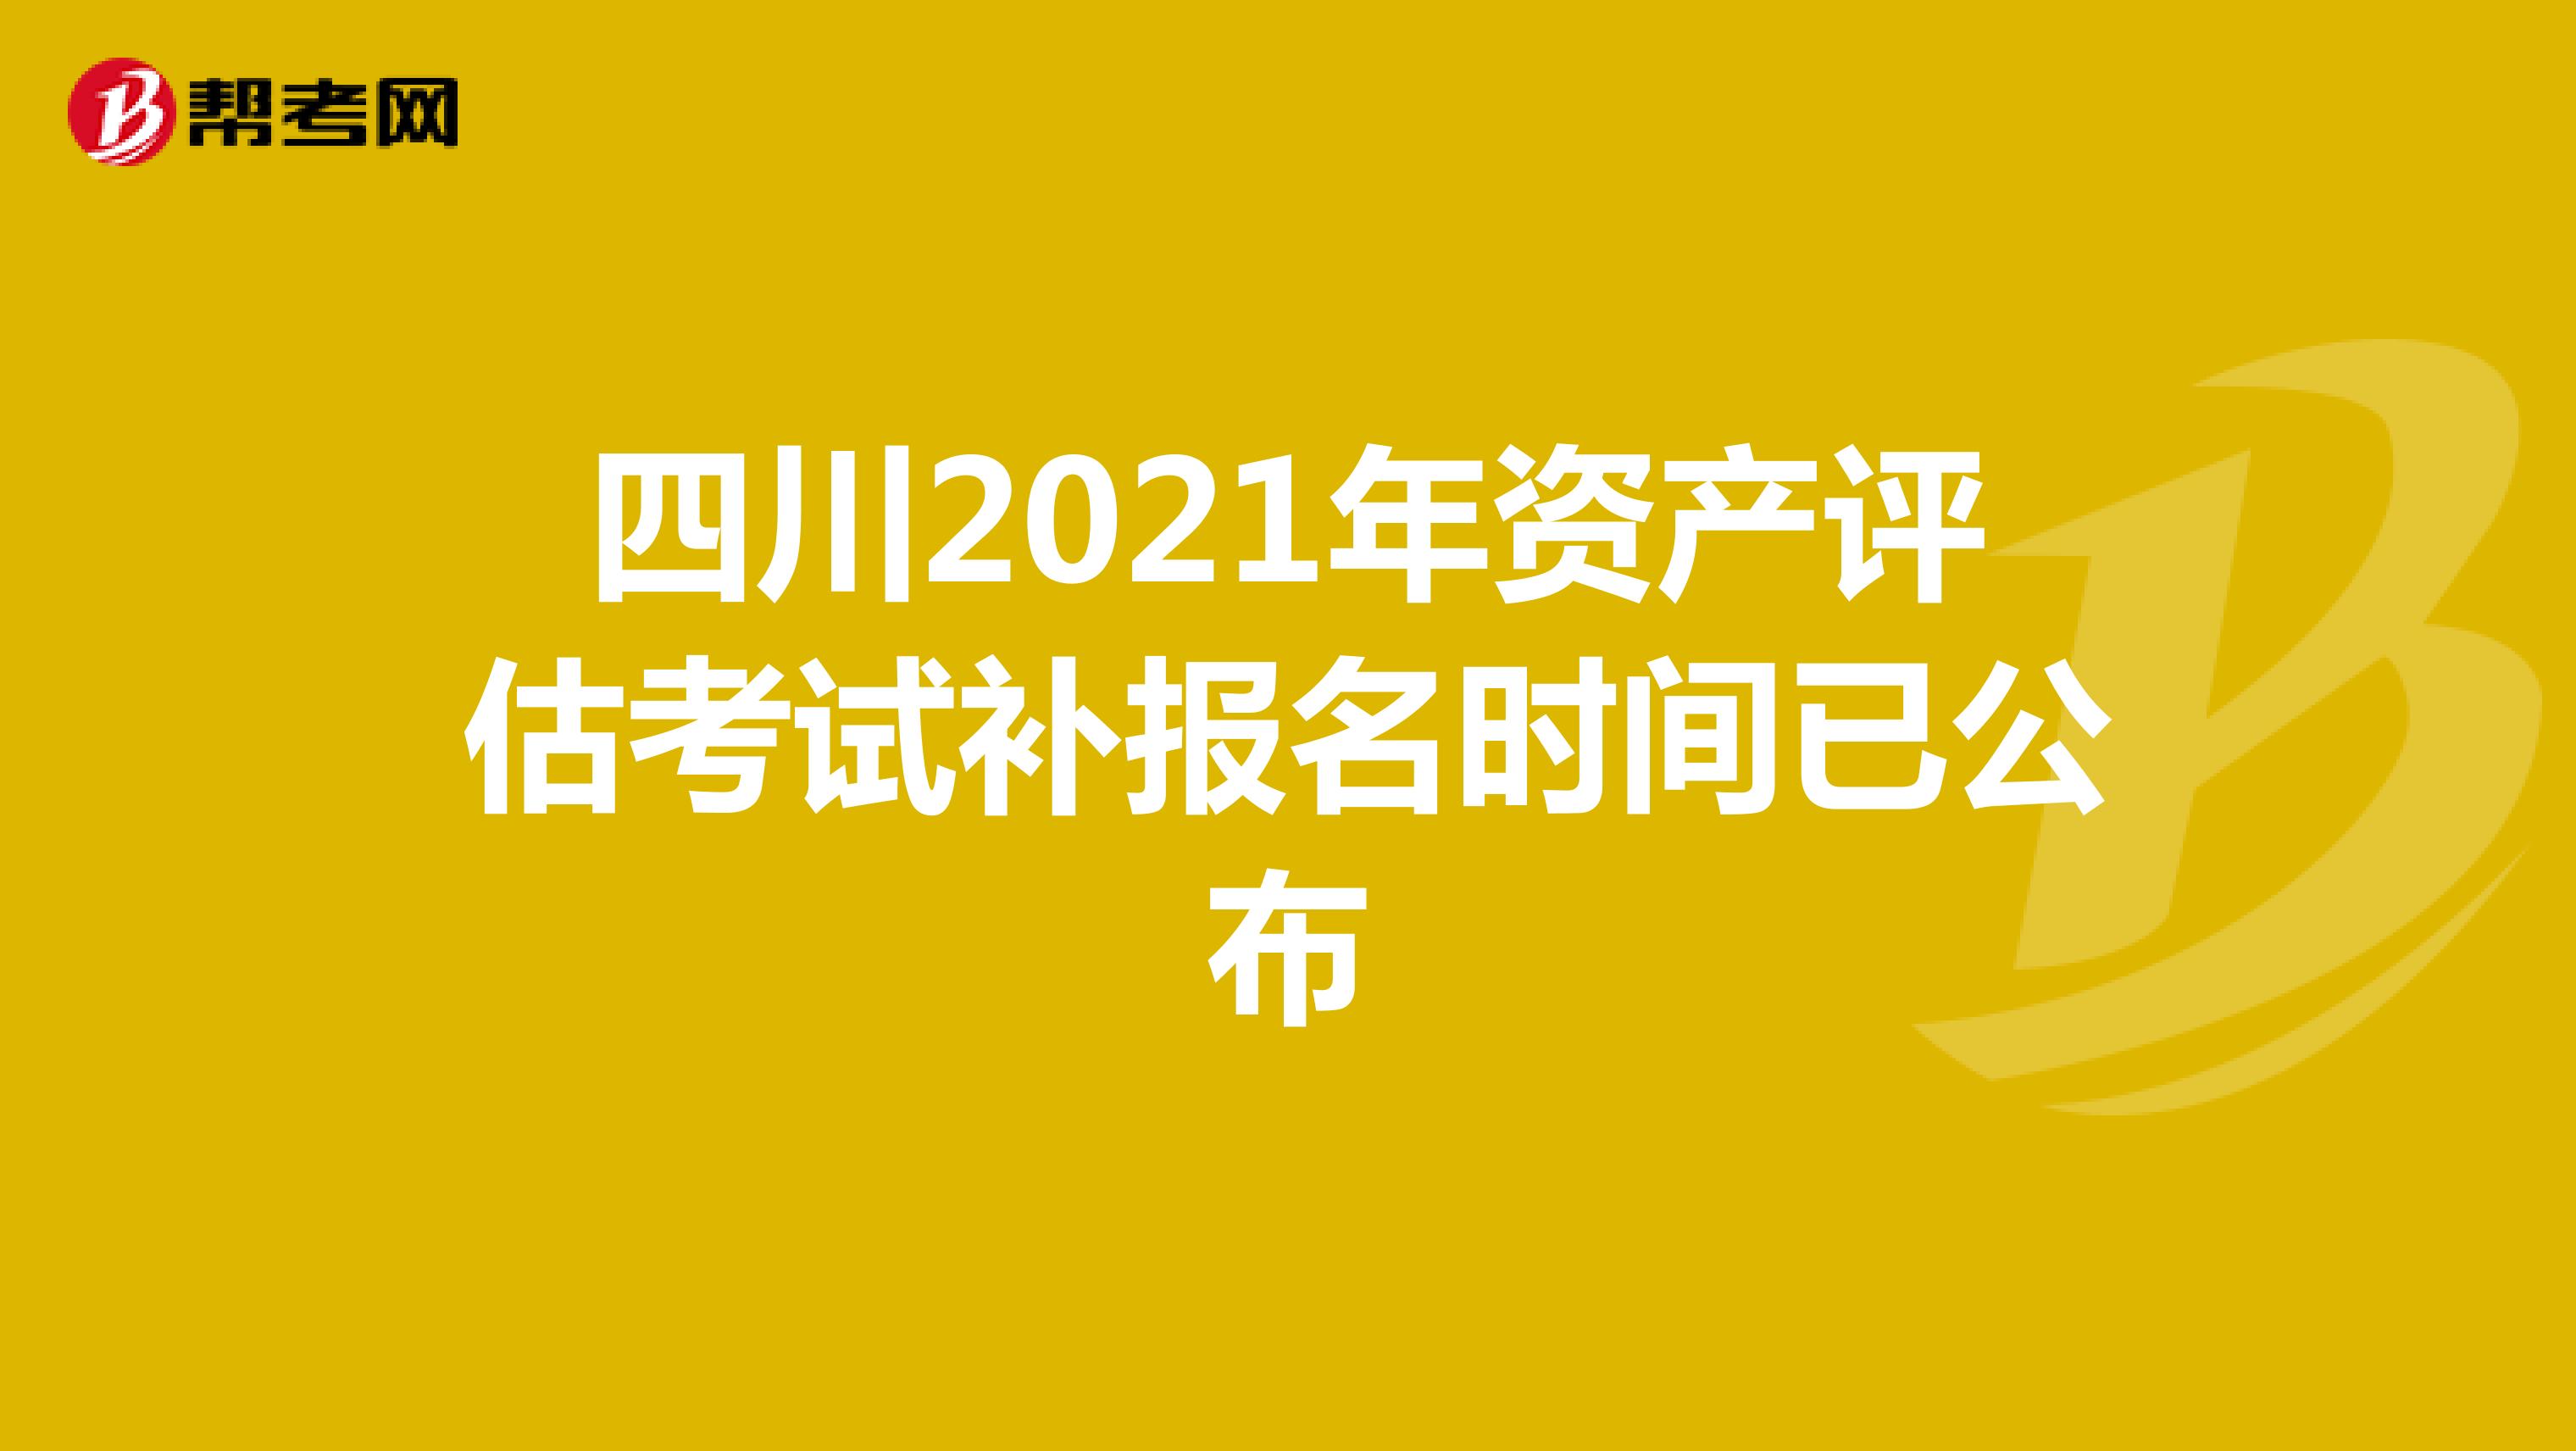 四川2021年资产评估考试补报名时间已公布